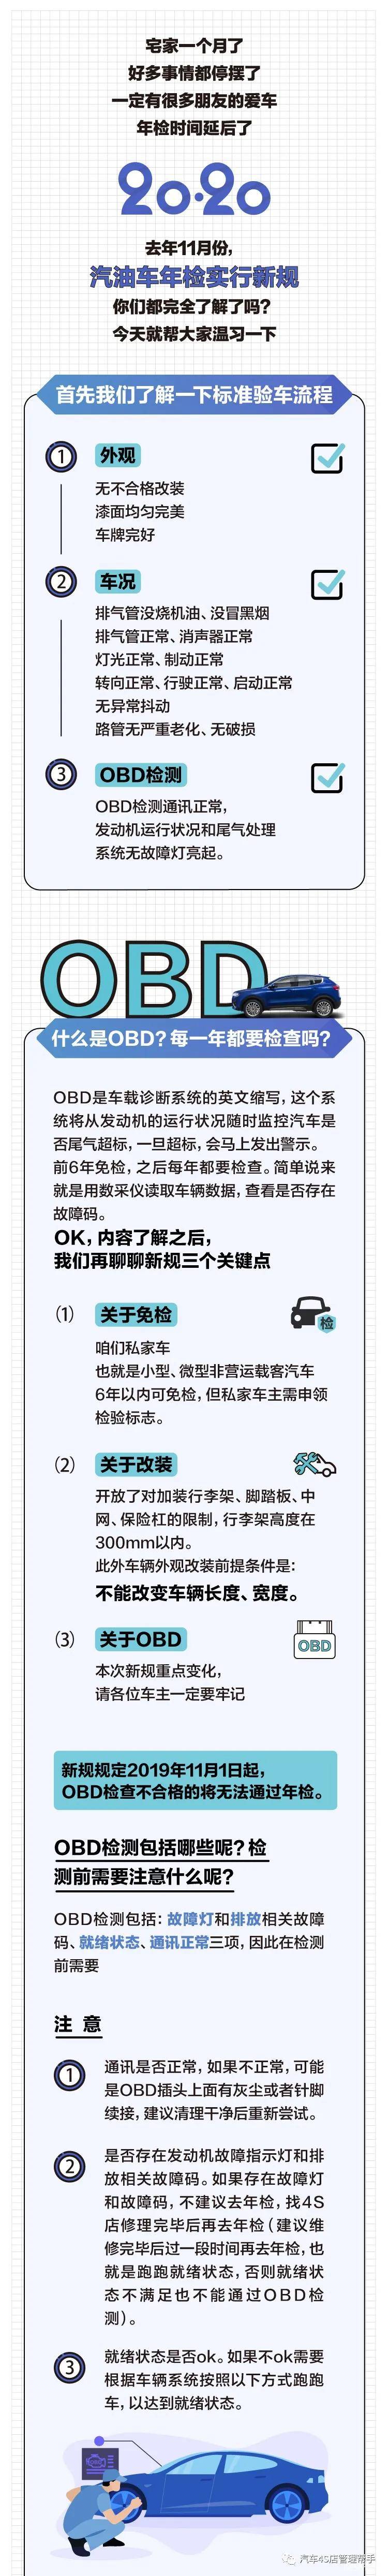 一图看懂车辆年检新规_手机搜狐网